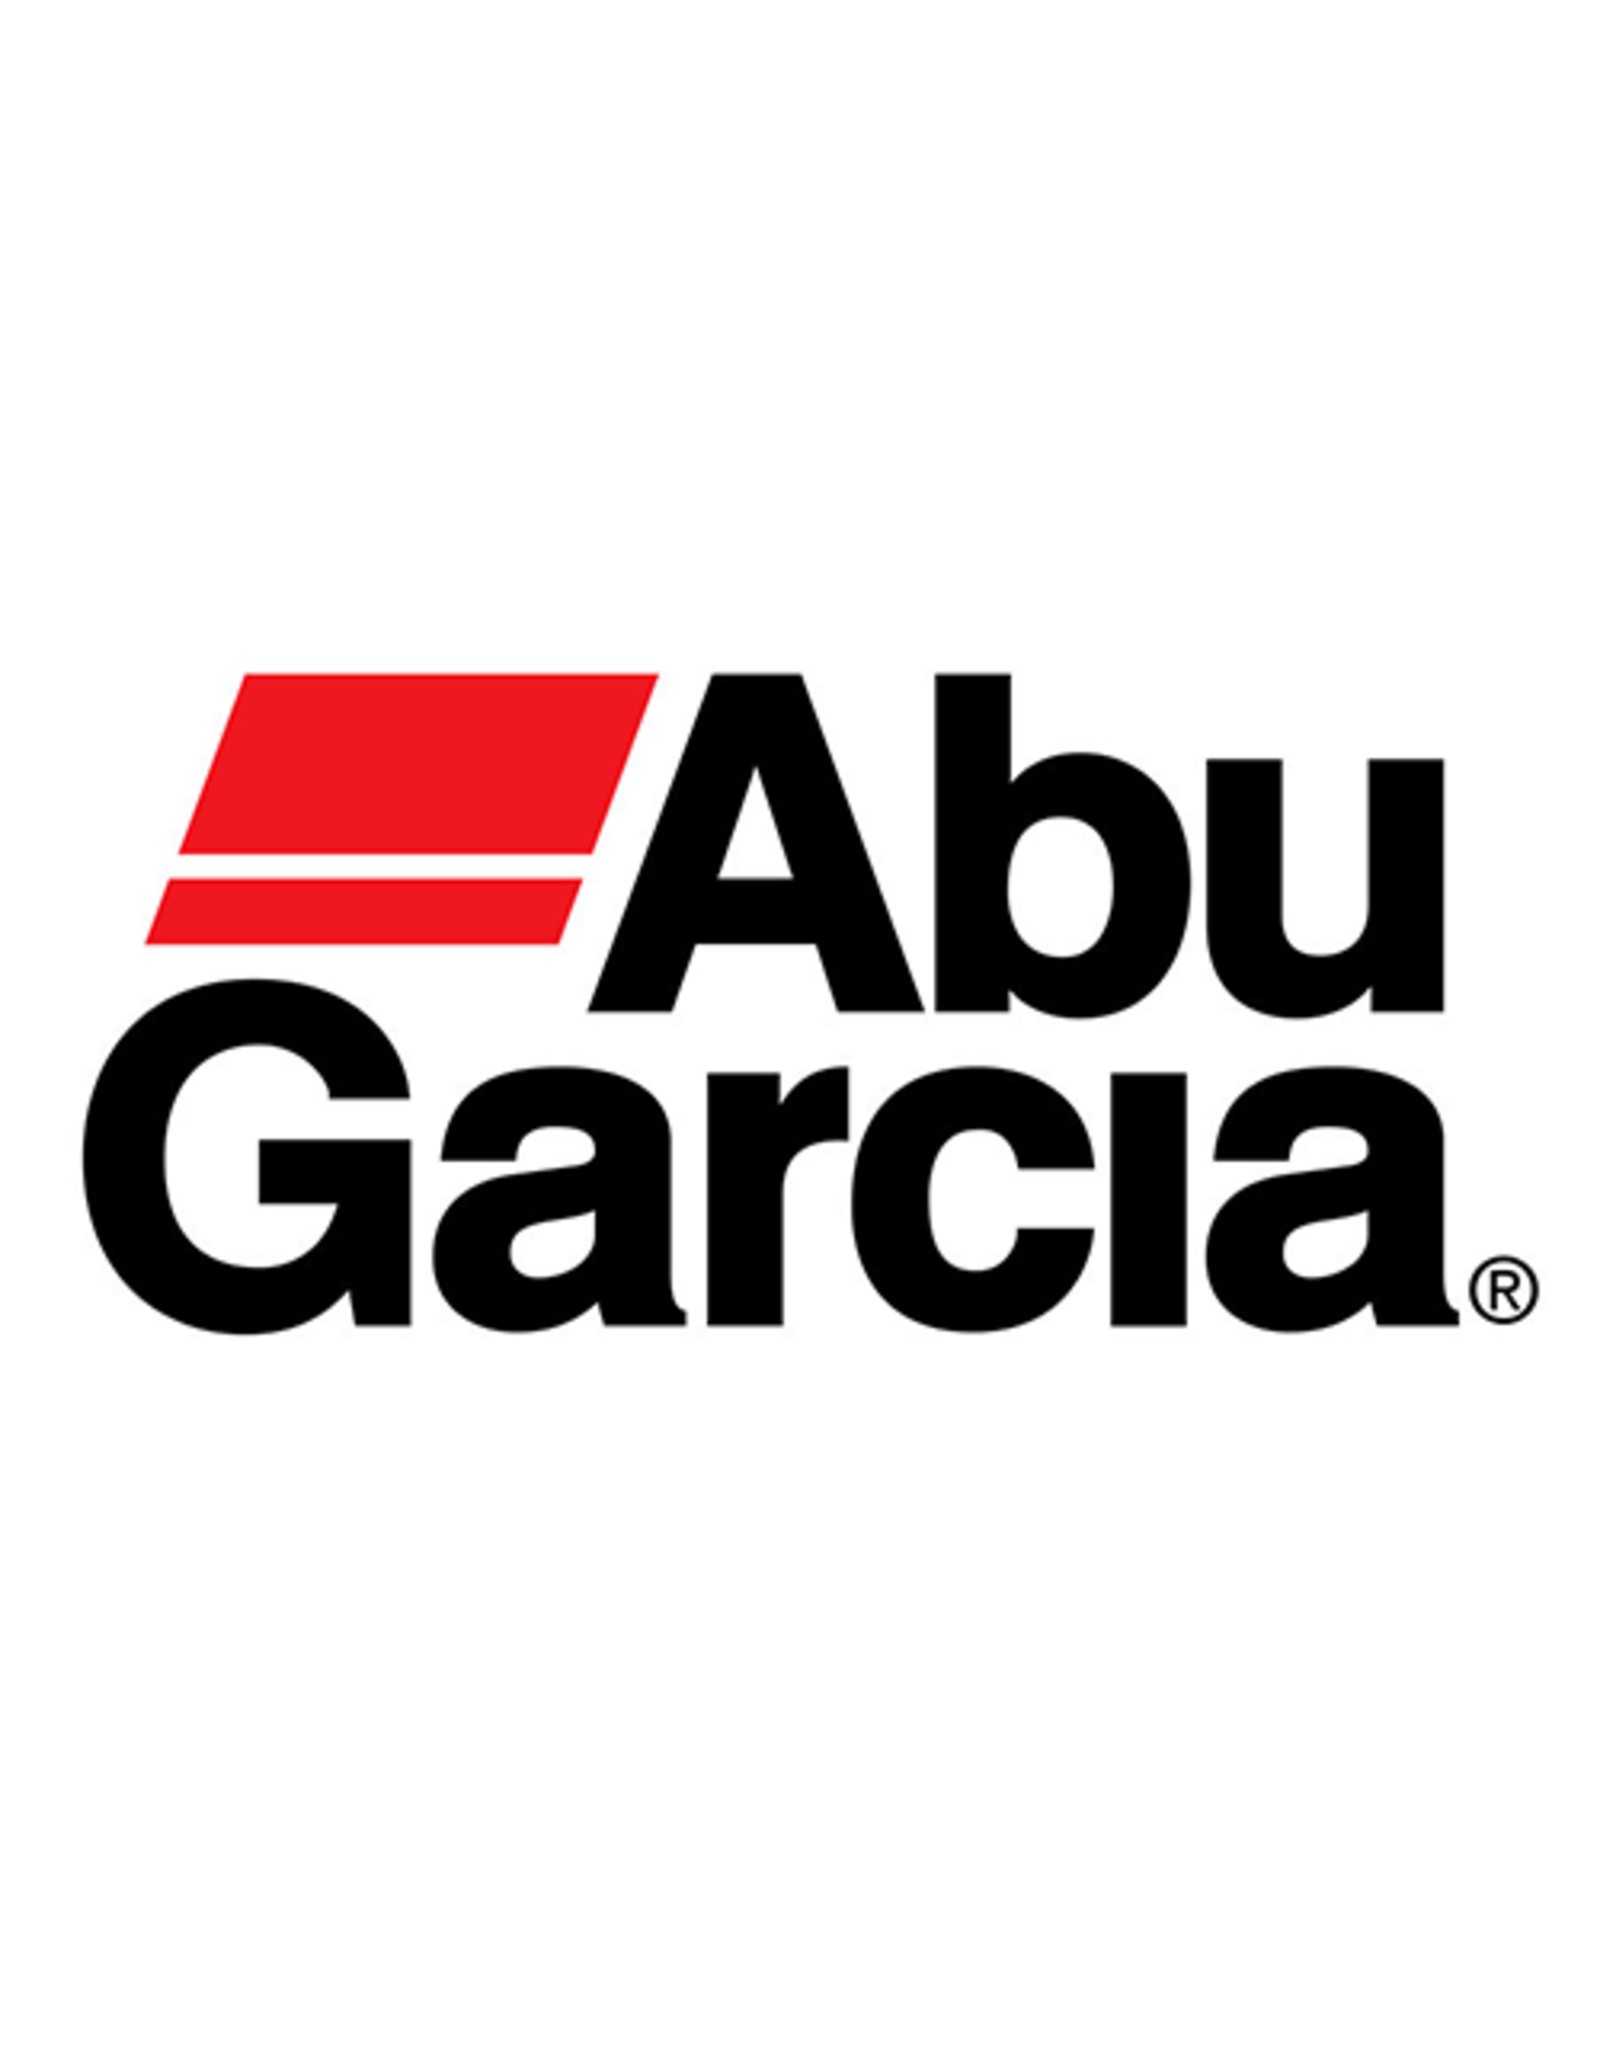 Abu Garcia 6786  FELT OIL RETAINER